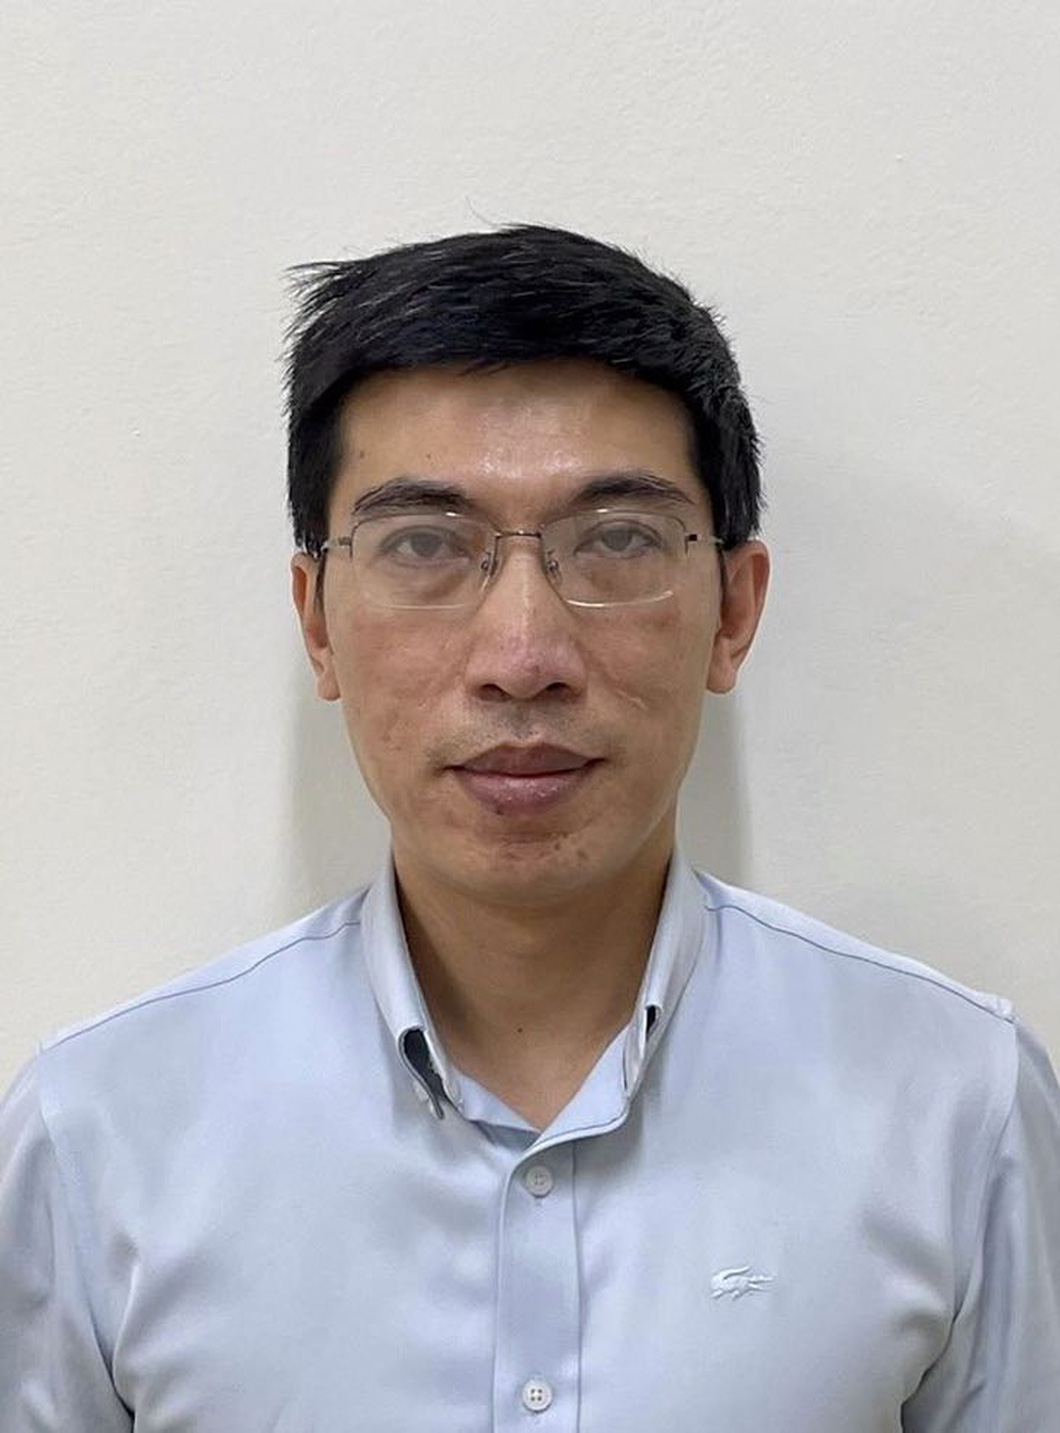 Ông Nguyễn Quang Linh - cựu trợ lý phó thủ tướng - bị cáo buộc nhận hối lộ trong vụ "chuyến bay giải cứu" - Ảnh: BỘ CÔNG AN